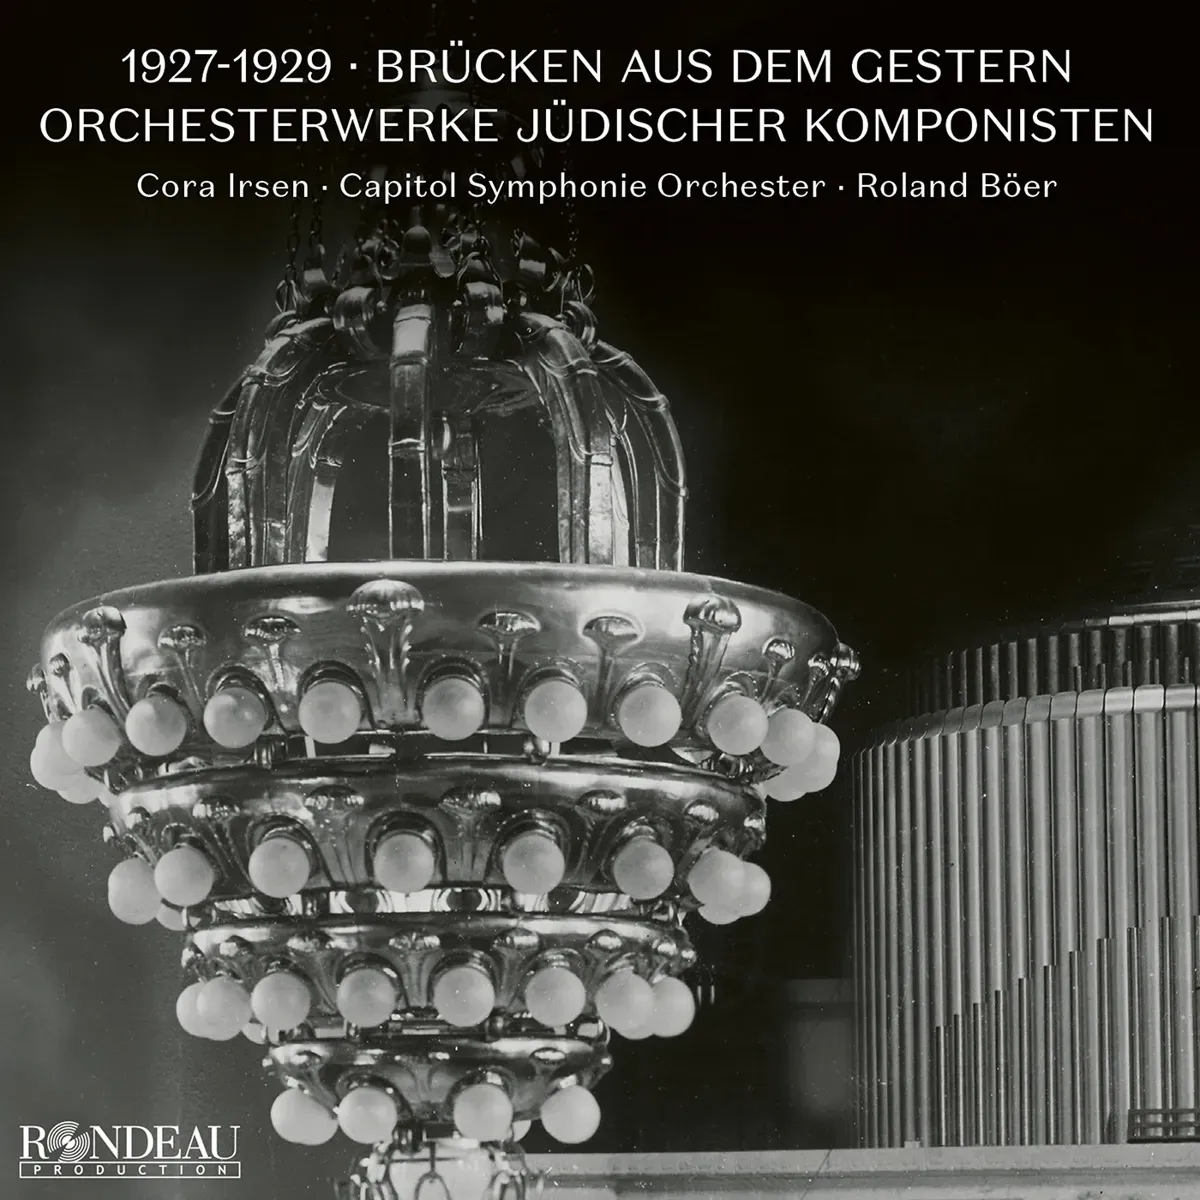 1927-1929: Brücken Aus Dem Gestern Orchesterwerke - Cora Irsen Capitol Symphonie Orchester Roland Böer. (CD)